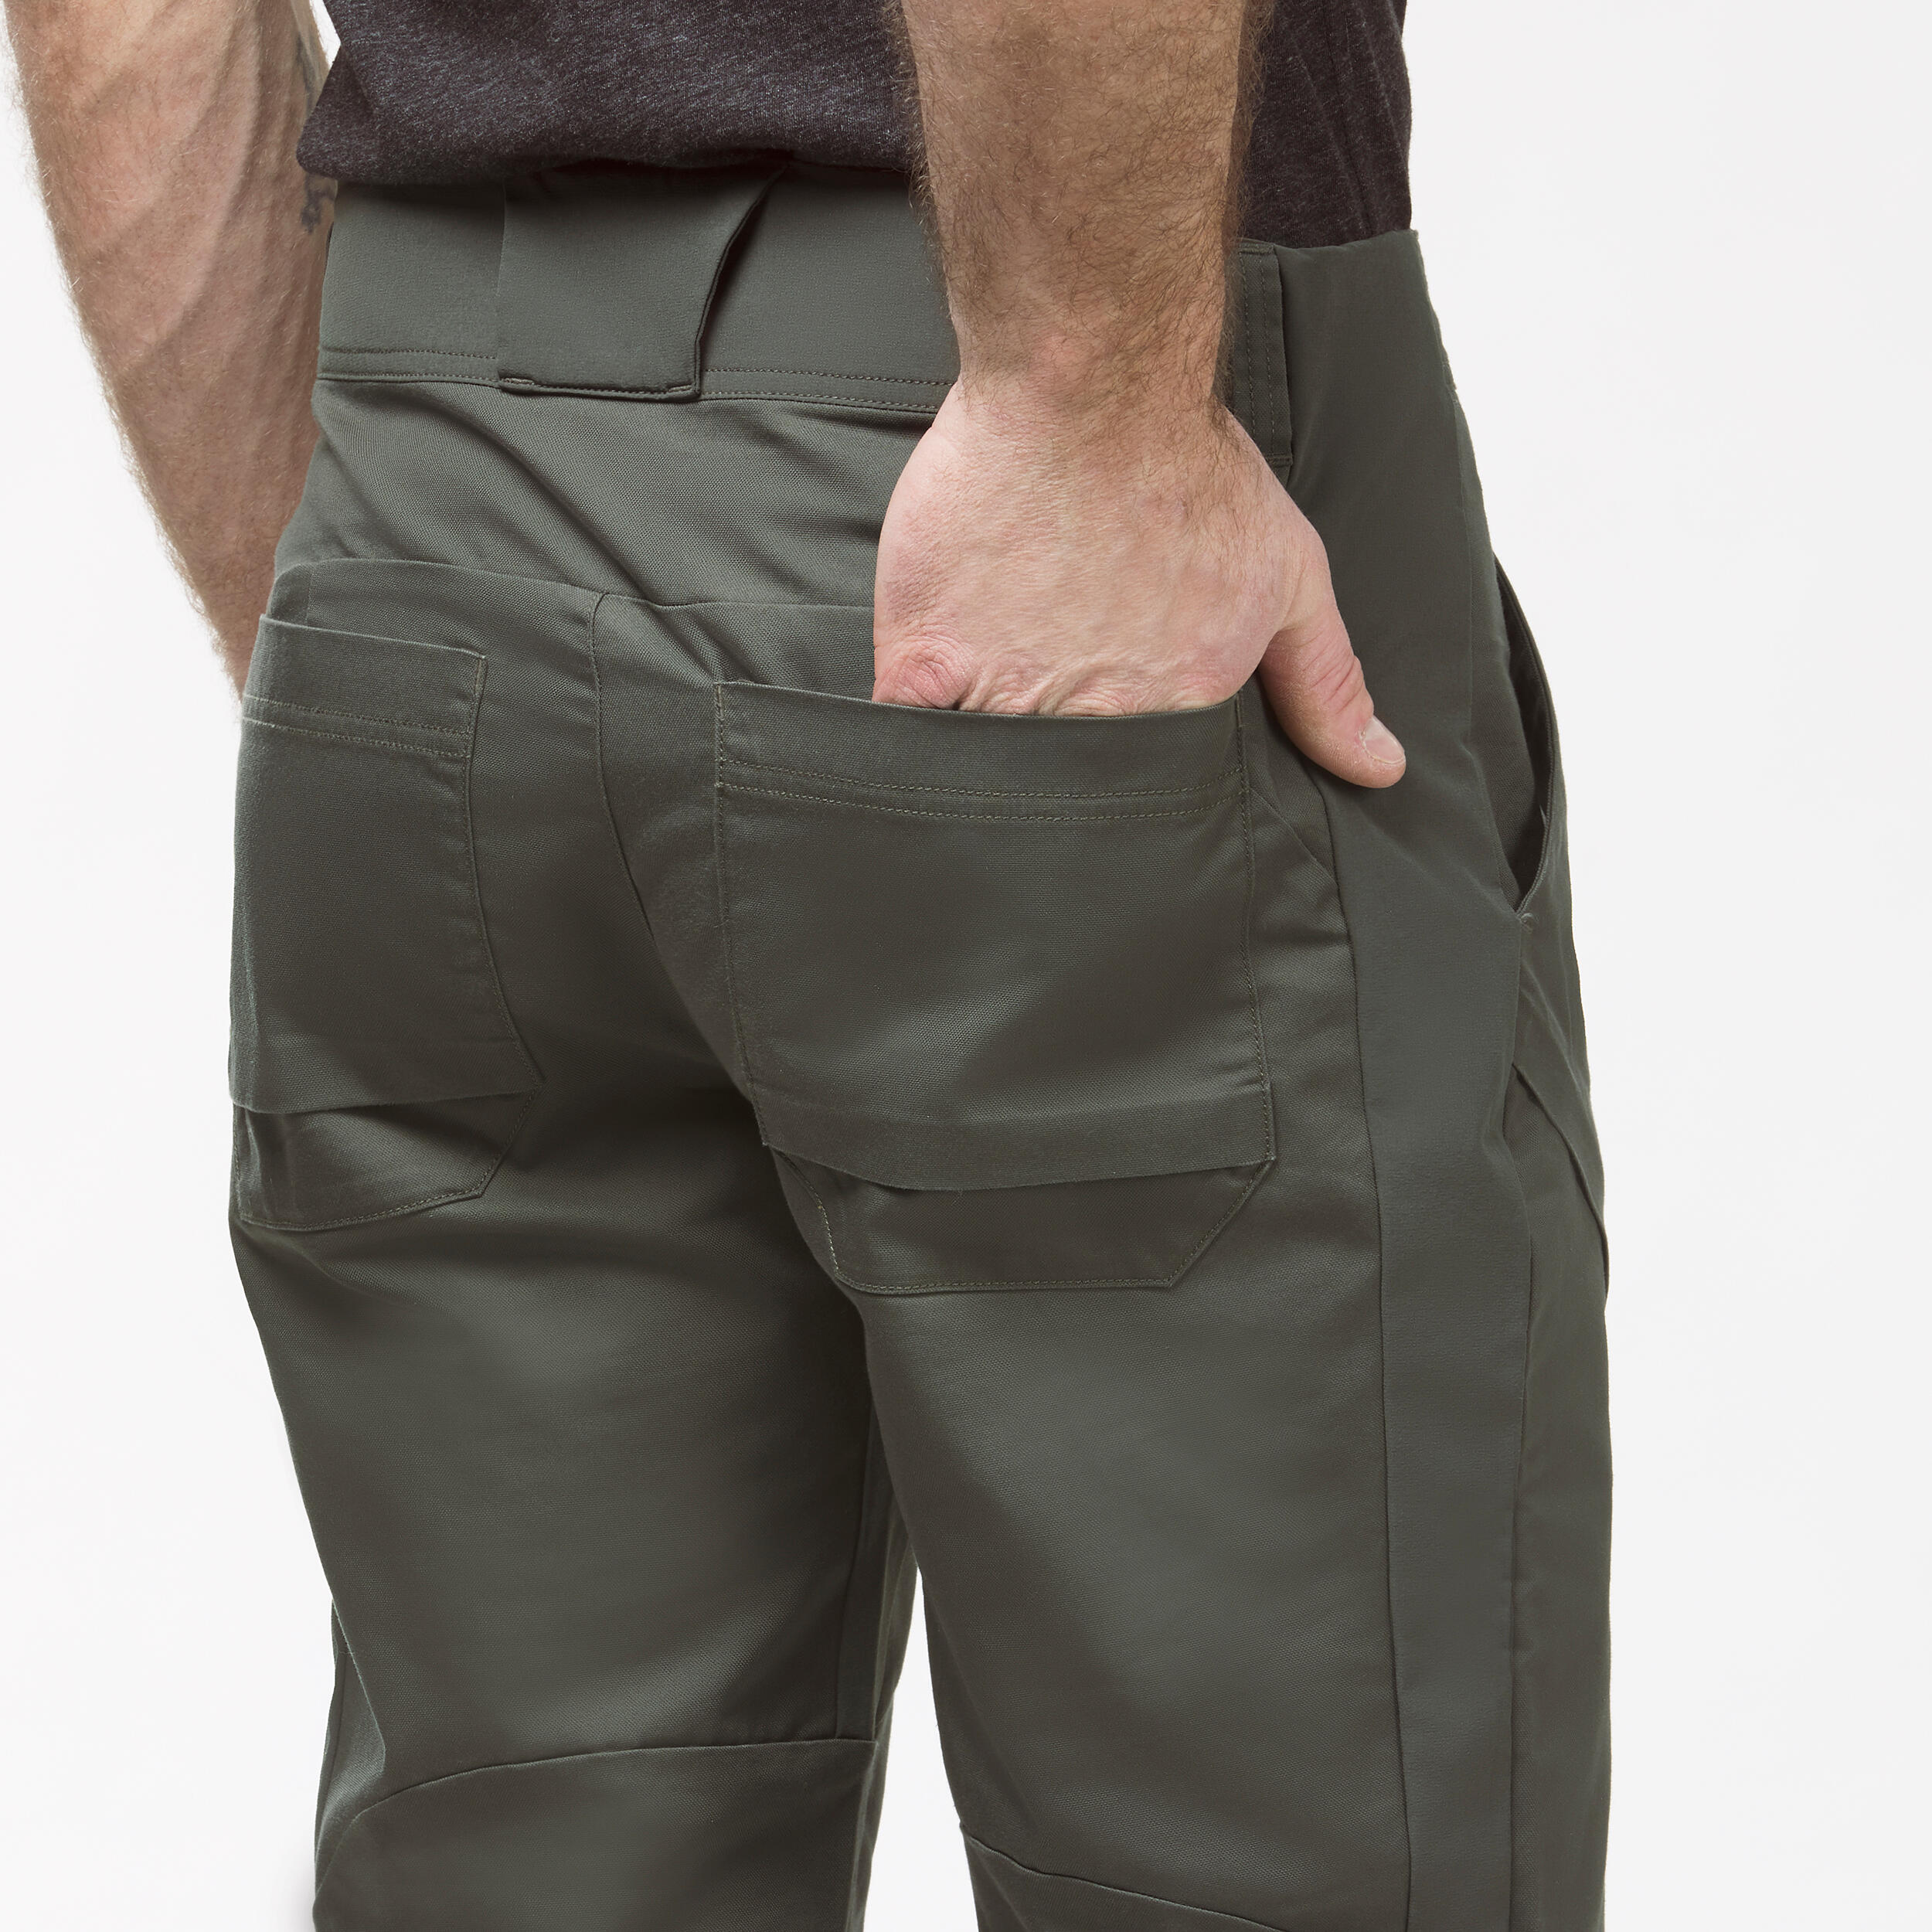 Buy Men's Slim Fit Blue Hiking Pants NH500 Online | Decathlon